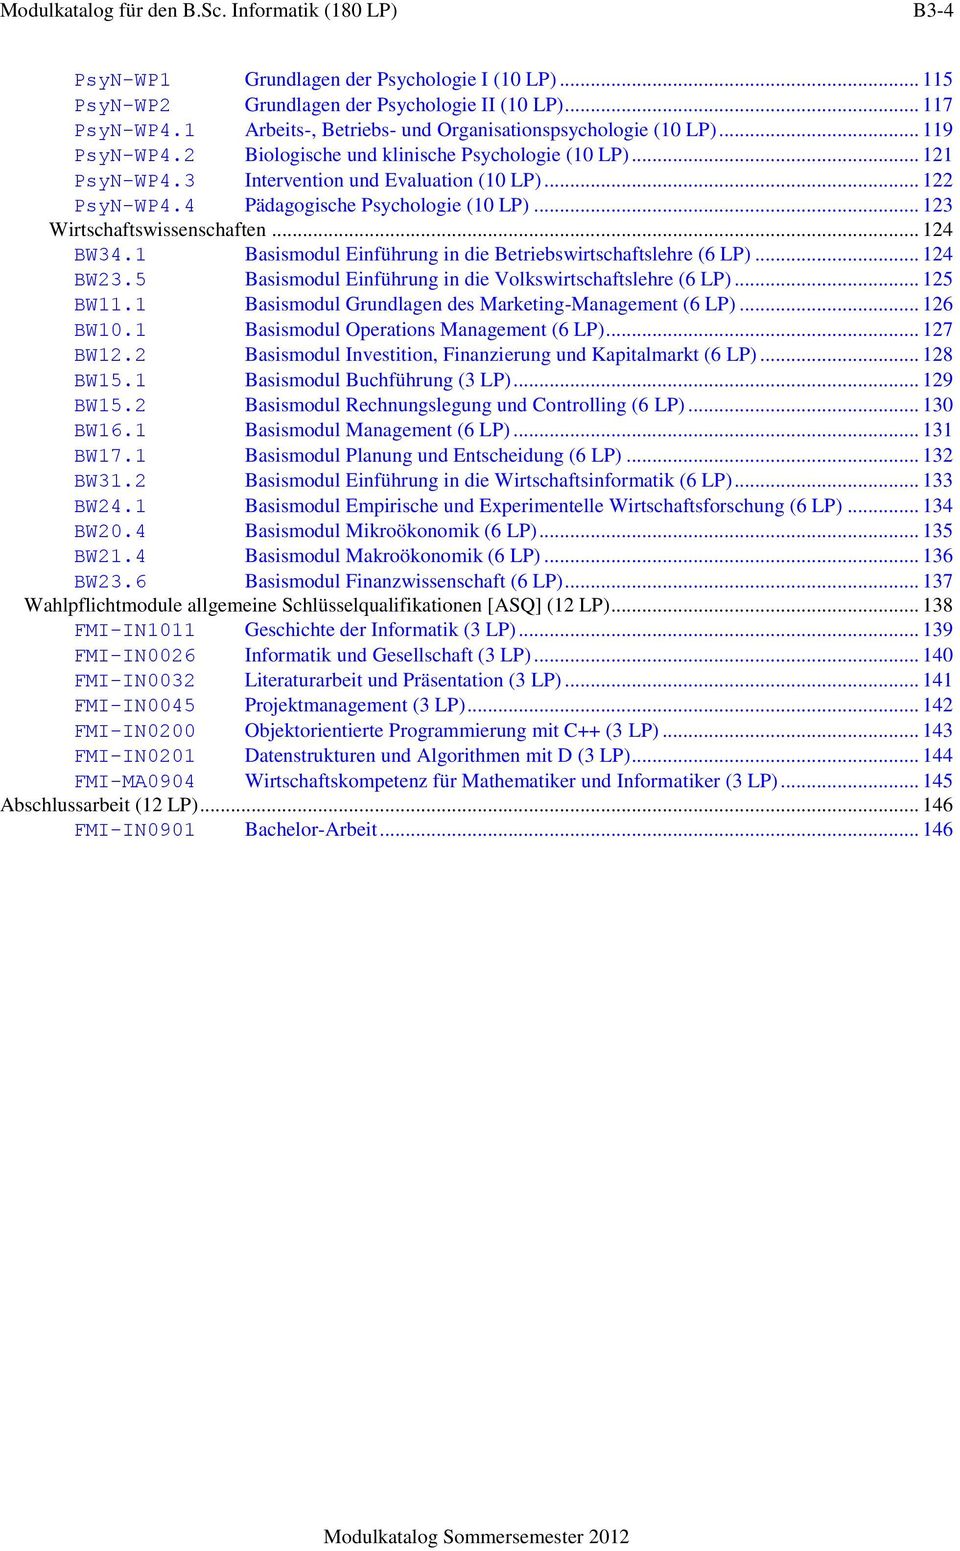 4 Pädagogische Psychologie (10 LP)... 123 Wirtschaftswissenschaften... 124 BW34.1 Basismodul Einführung in die Betriebswirtschaftslehre (6 LP)... 124 BW23.